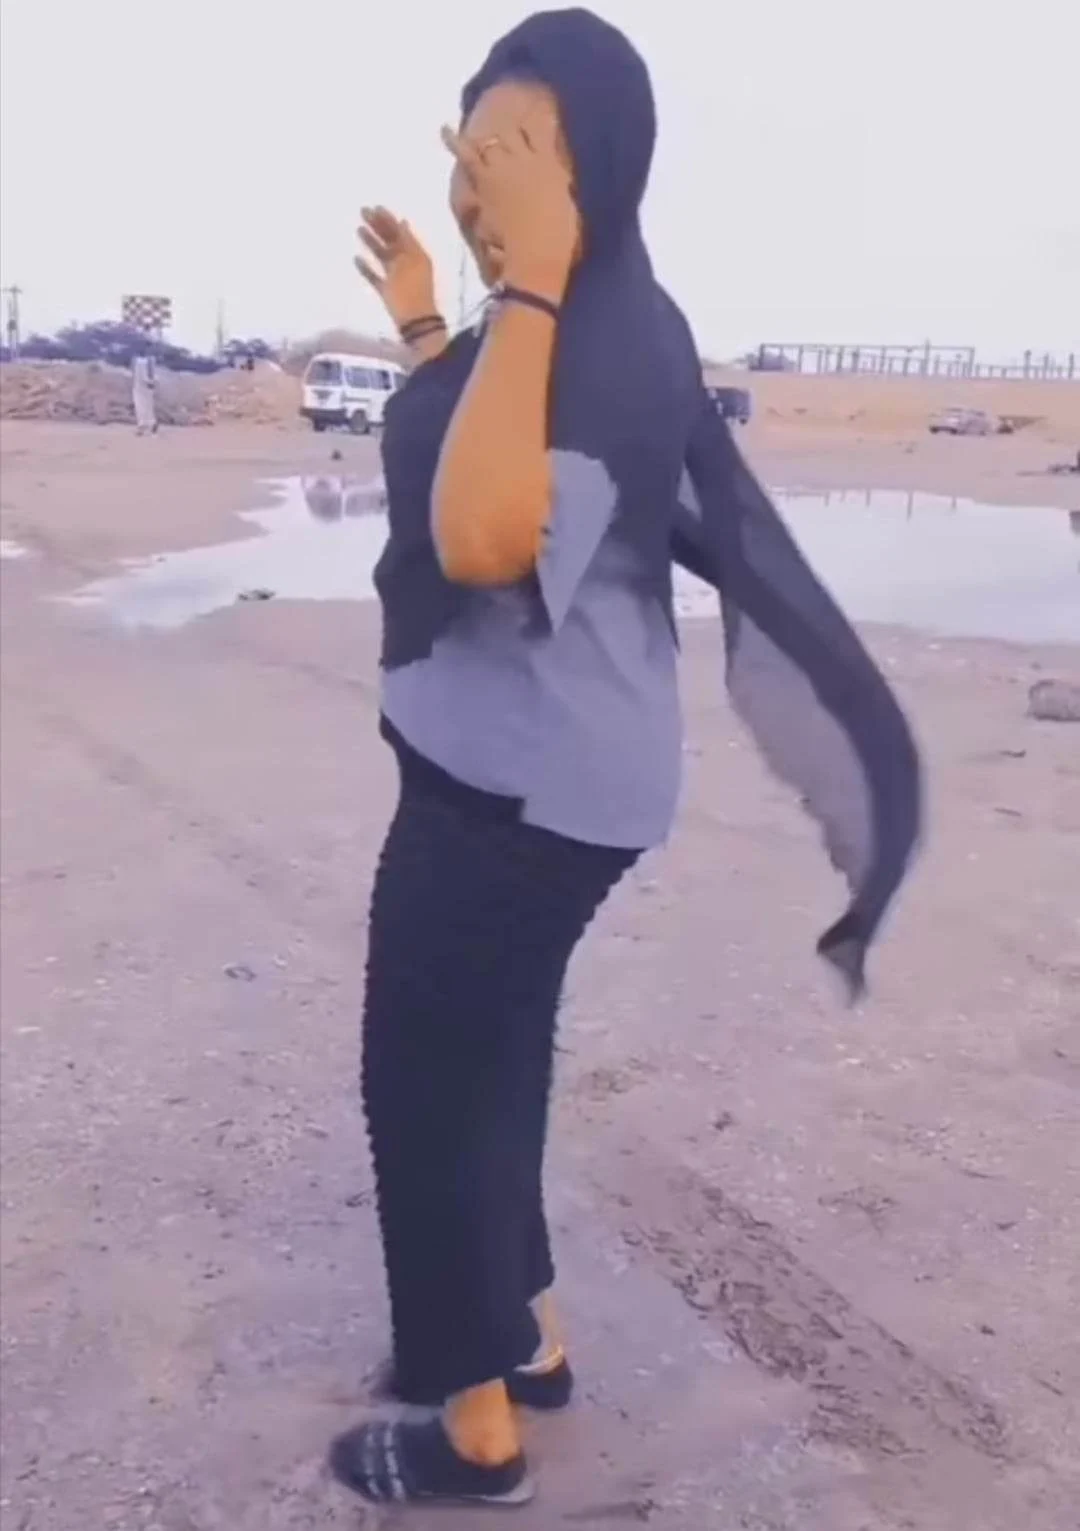 شاهد بالصورة والفيديو فتاة سودانية تقدم فاصل من الرقص المثير على طريقة رقيص العروس وفي الشارع